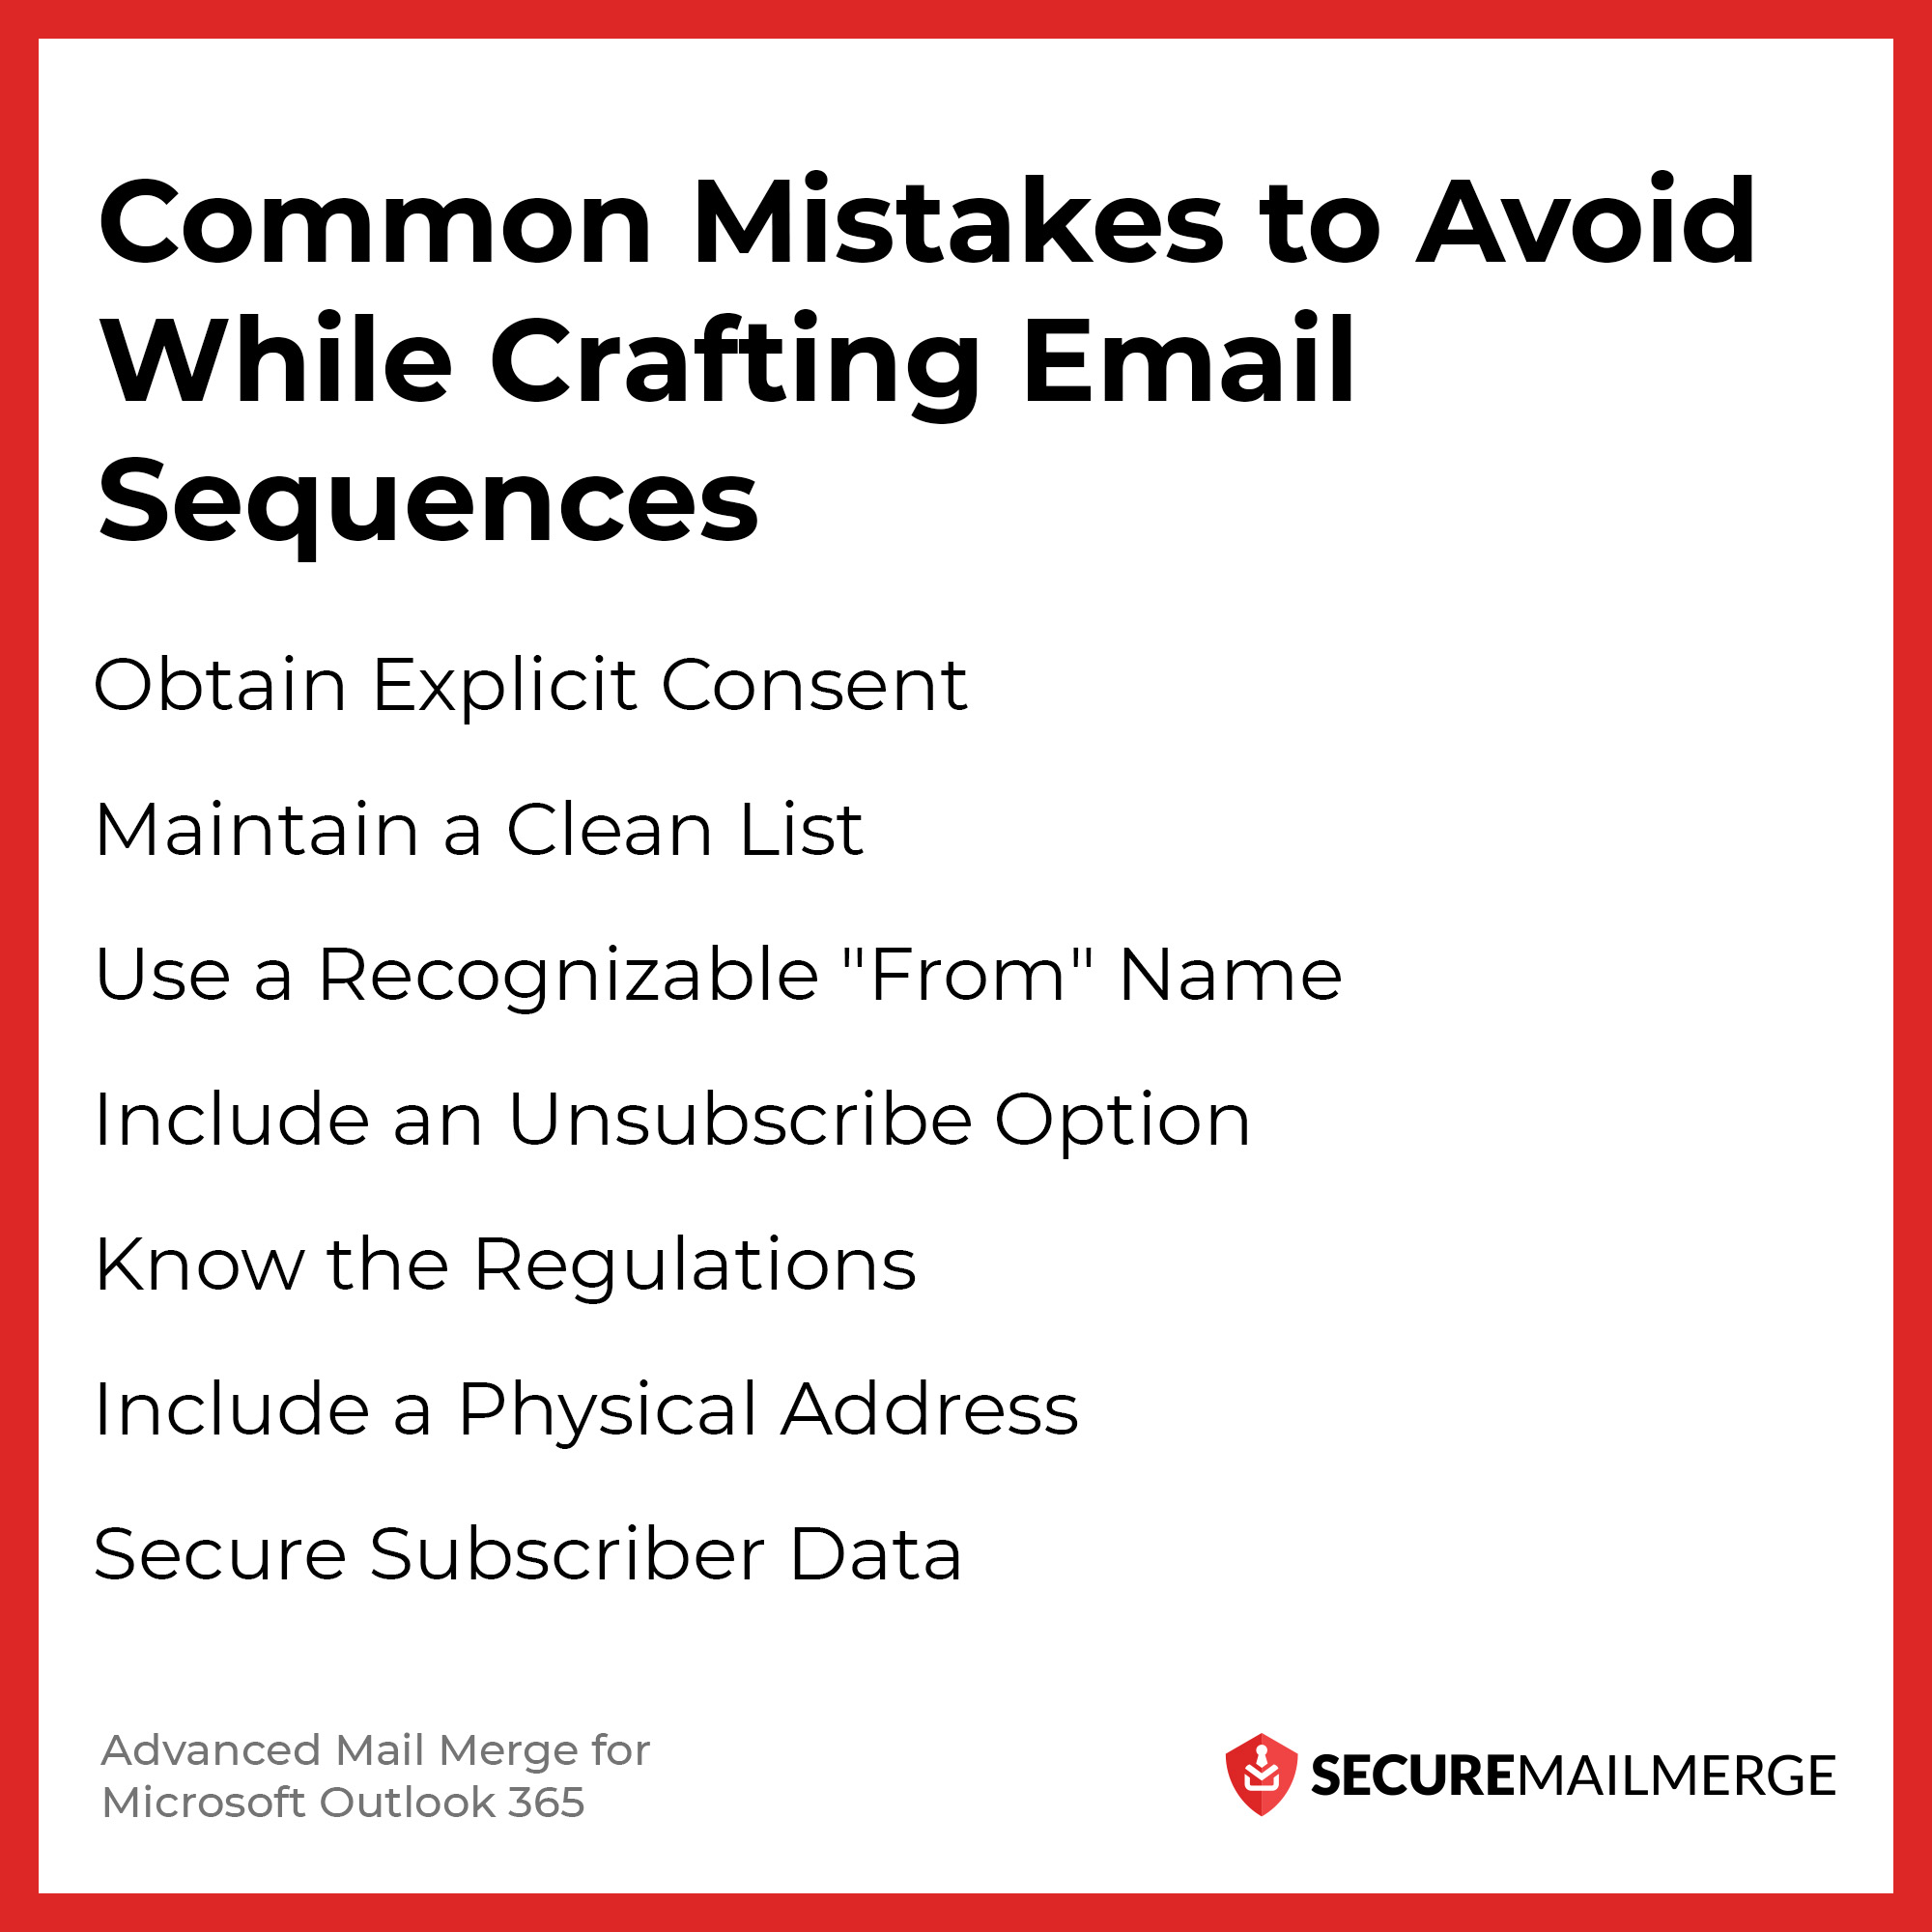 Häufige Fehler, die bei der Erstellung von E-Mail-Sequenzen vermieden werden sollten